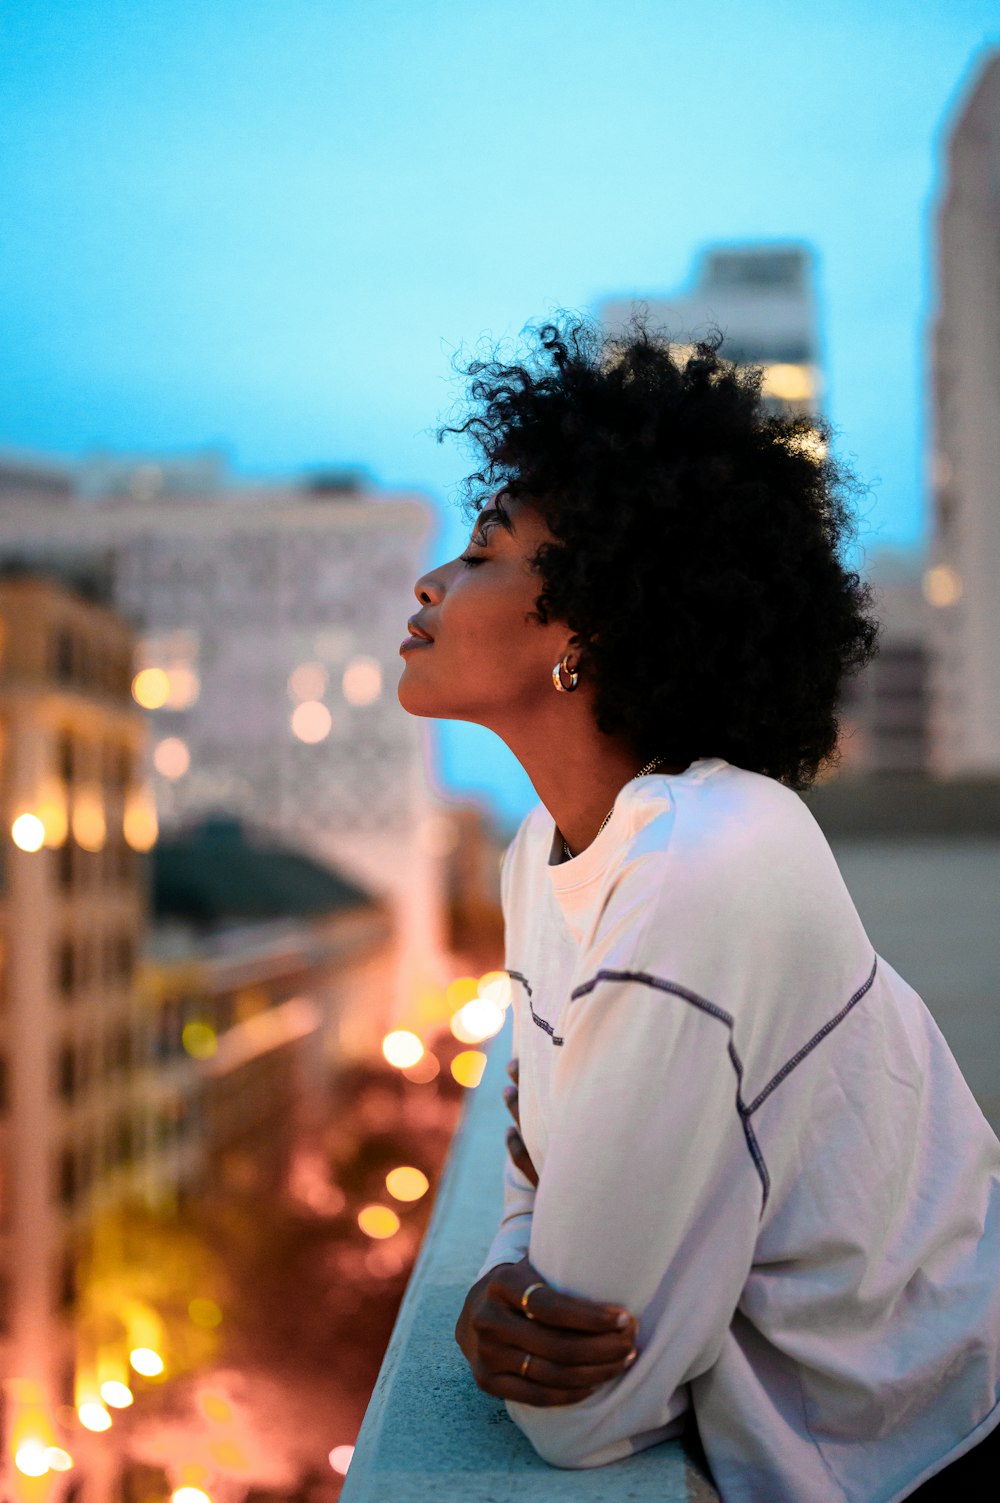 donna in camicia con colletto bianco che guarda la città durante la notte